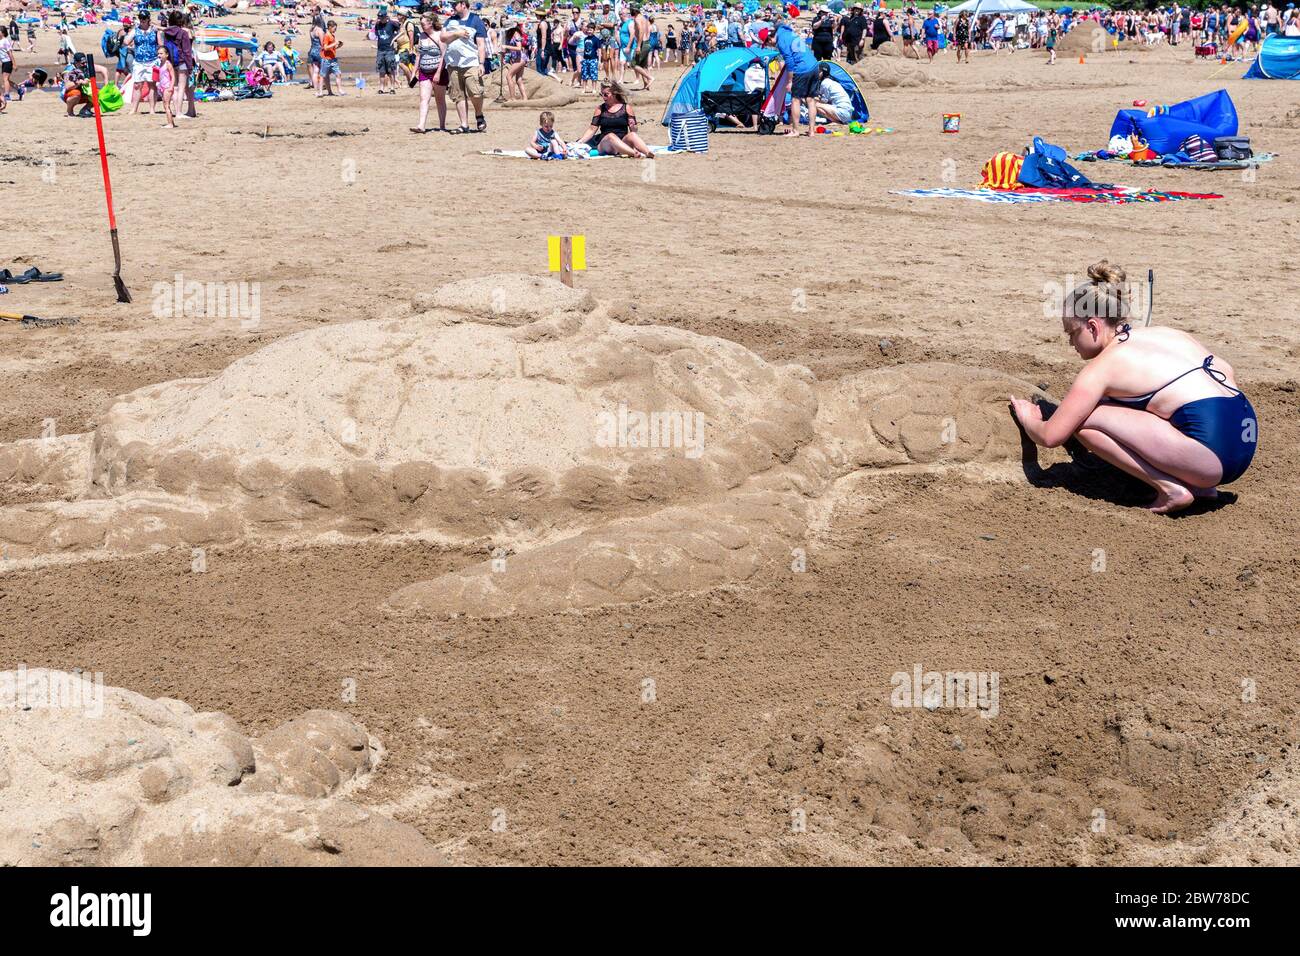 New River Beach, Nouveau-Brunswick, Canada - le 7 juillet 2018 : le concours annuel de sculpture sur sable. Une femme sculpte une tortue. Banque D'Images